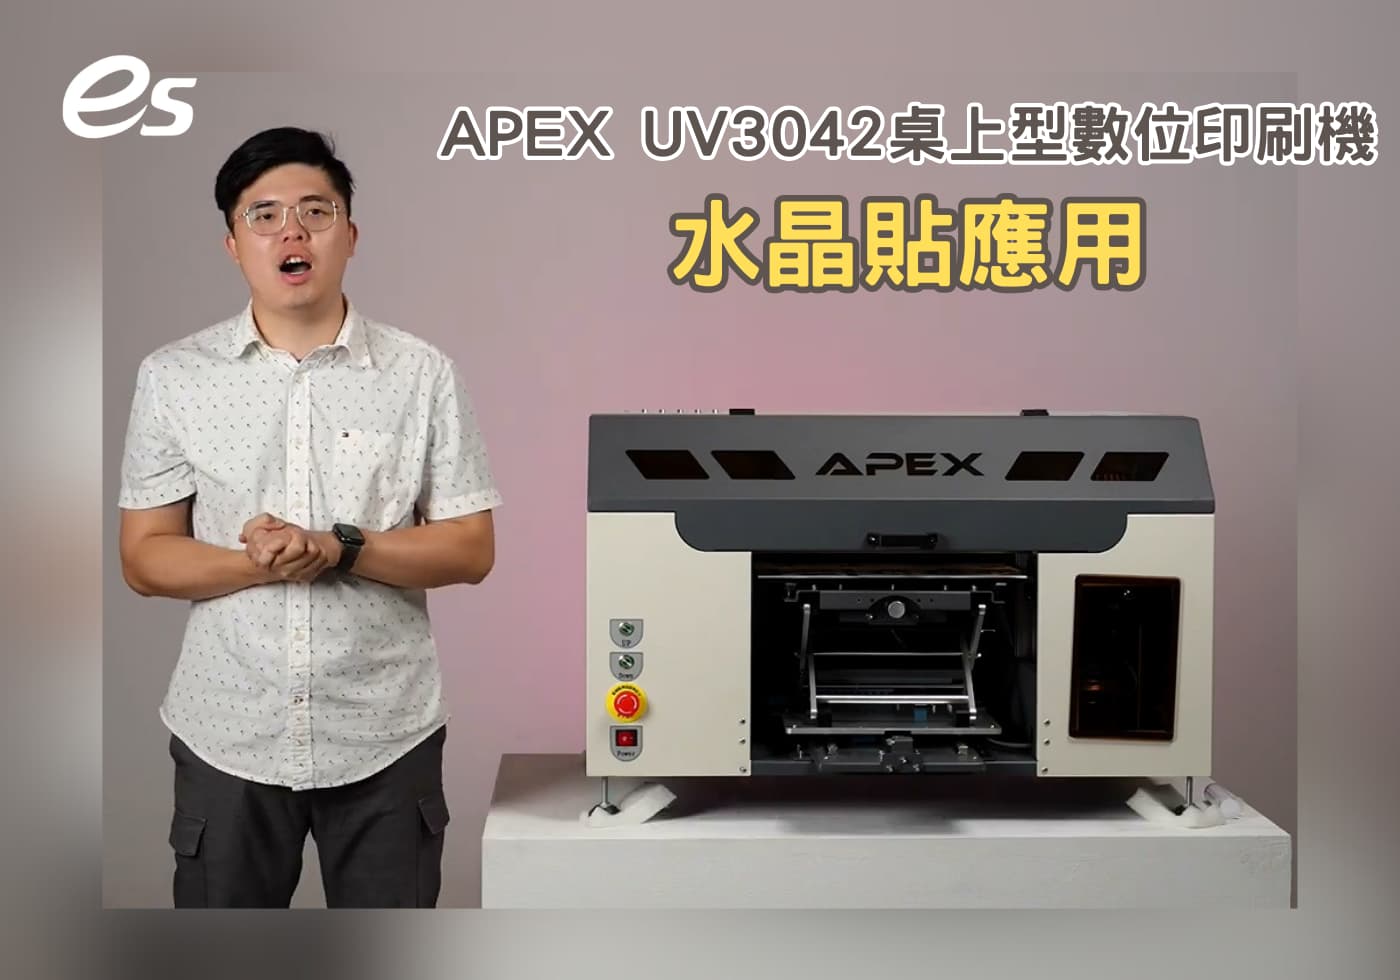 您目前正在查看 APEX UV3042 桌上型數位印刷機的水晶貼應用